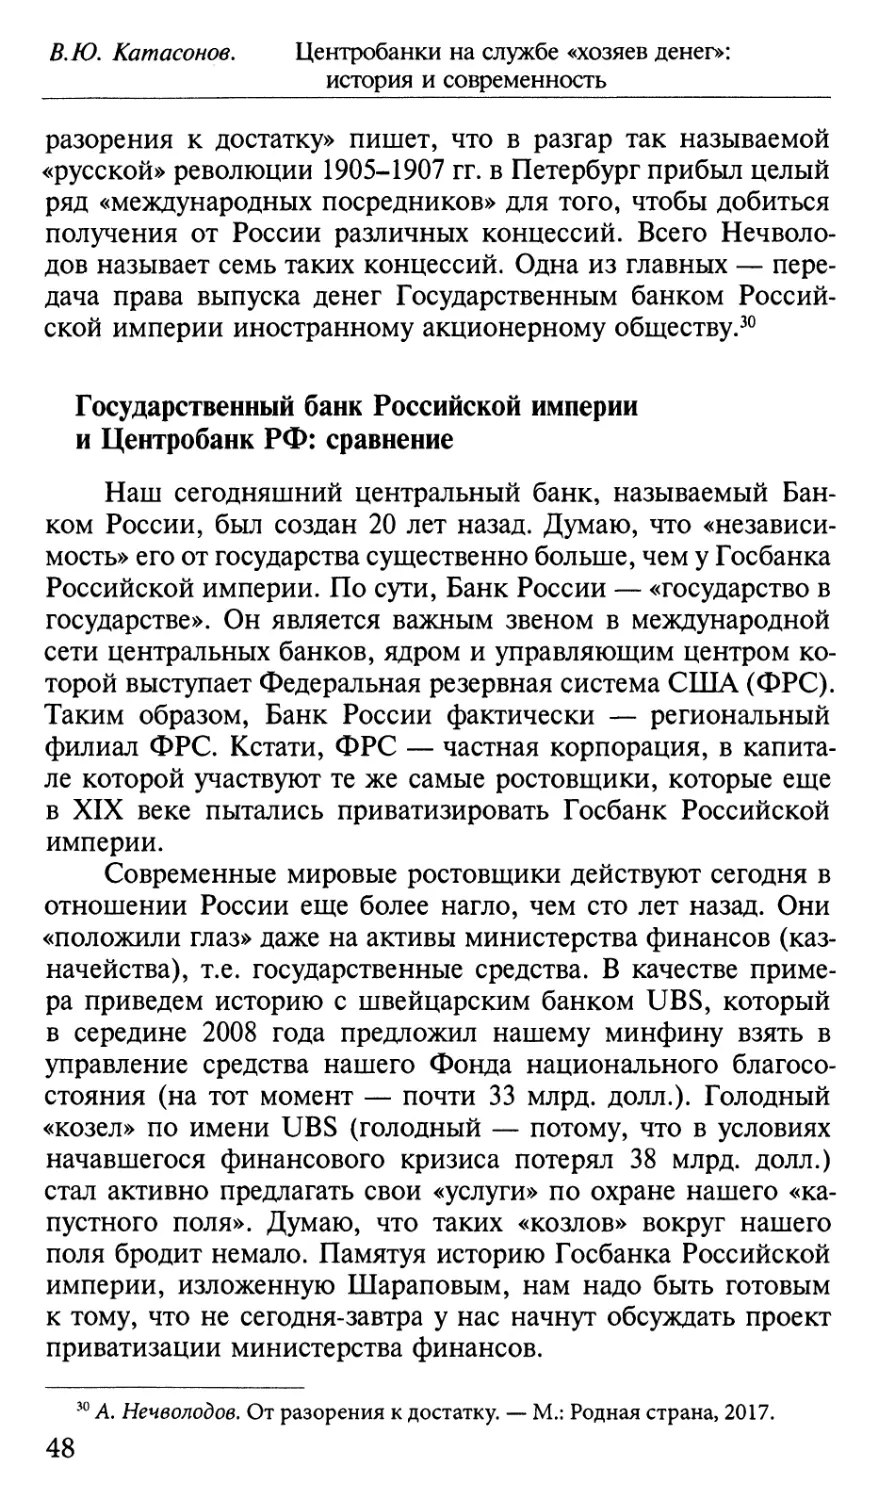 Государственный банк Российской империи и Центробанк РФ: сравнение